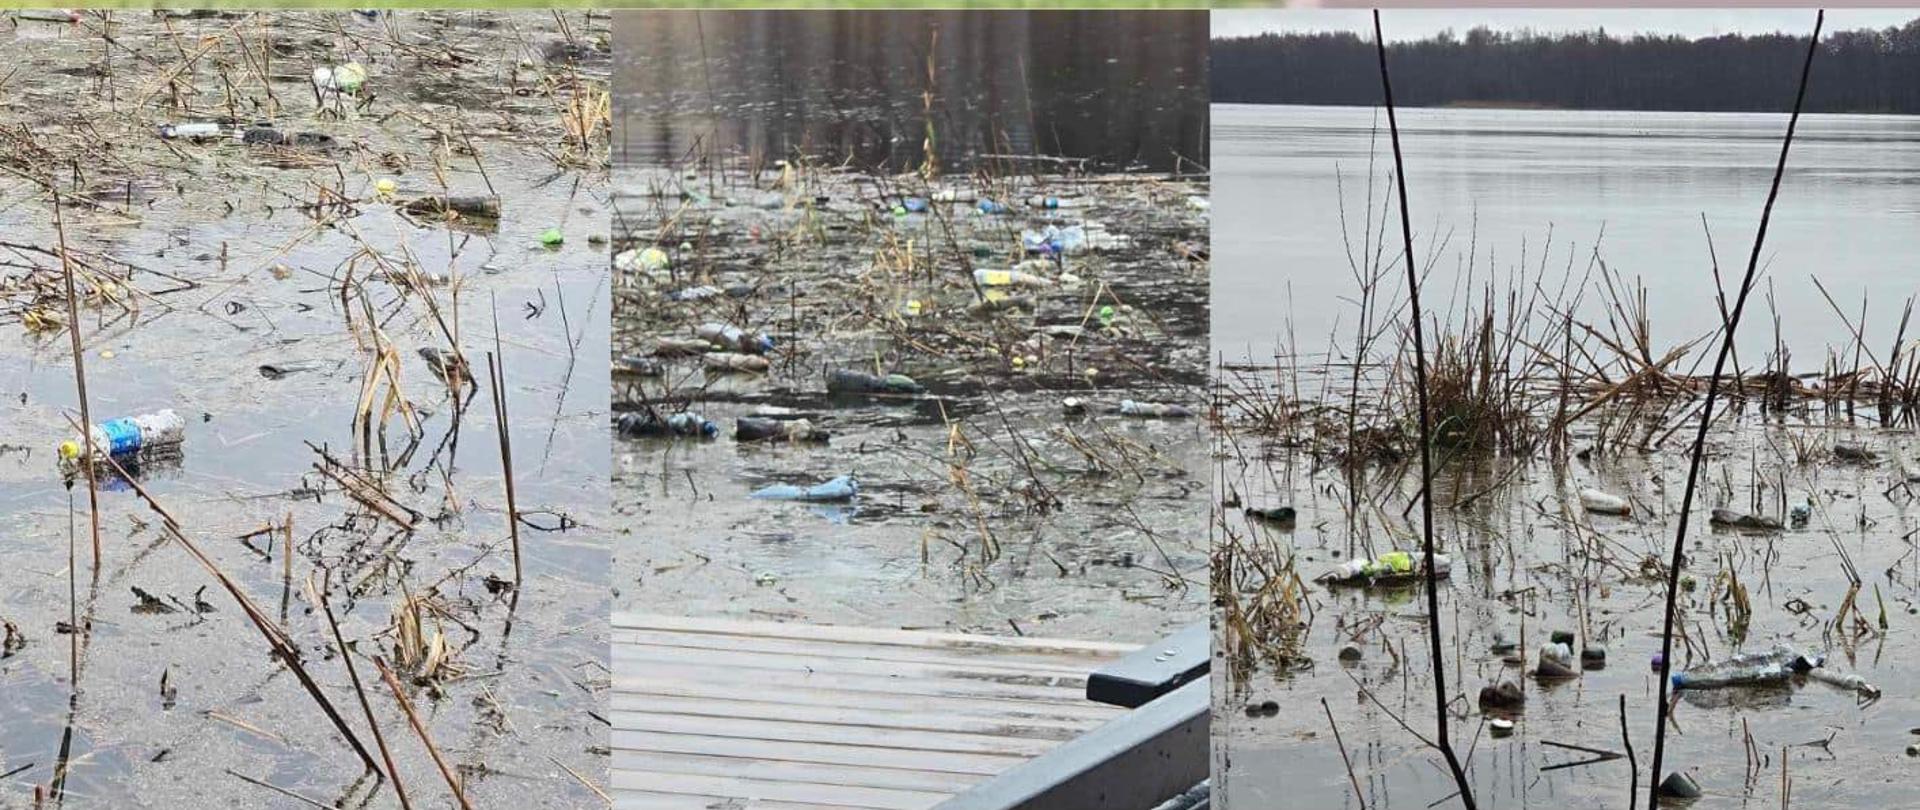 Plakat zapowiadający społecznie sprzątanie Jeziora Miejskiego (Złotowskiego). Na zdjęciach widać zaśmiecone jezioro. 